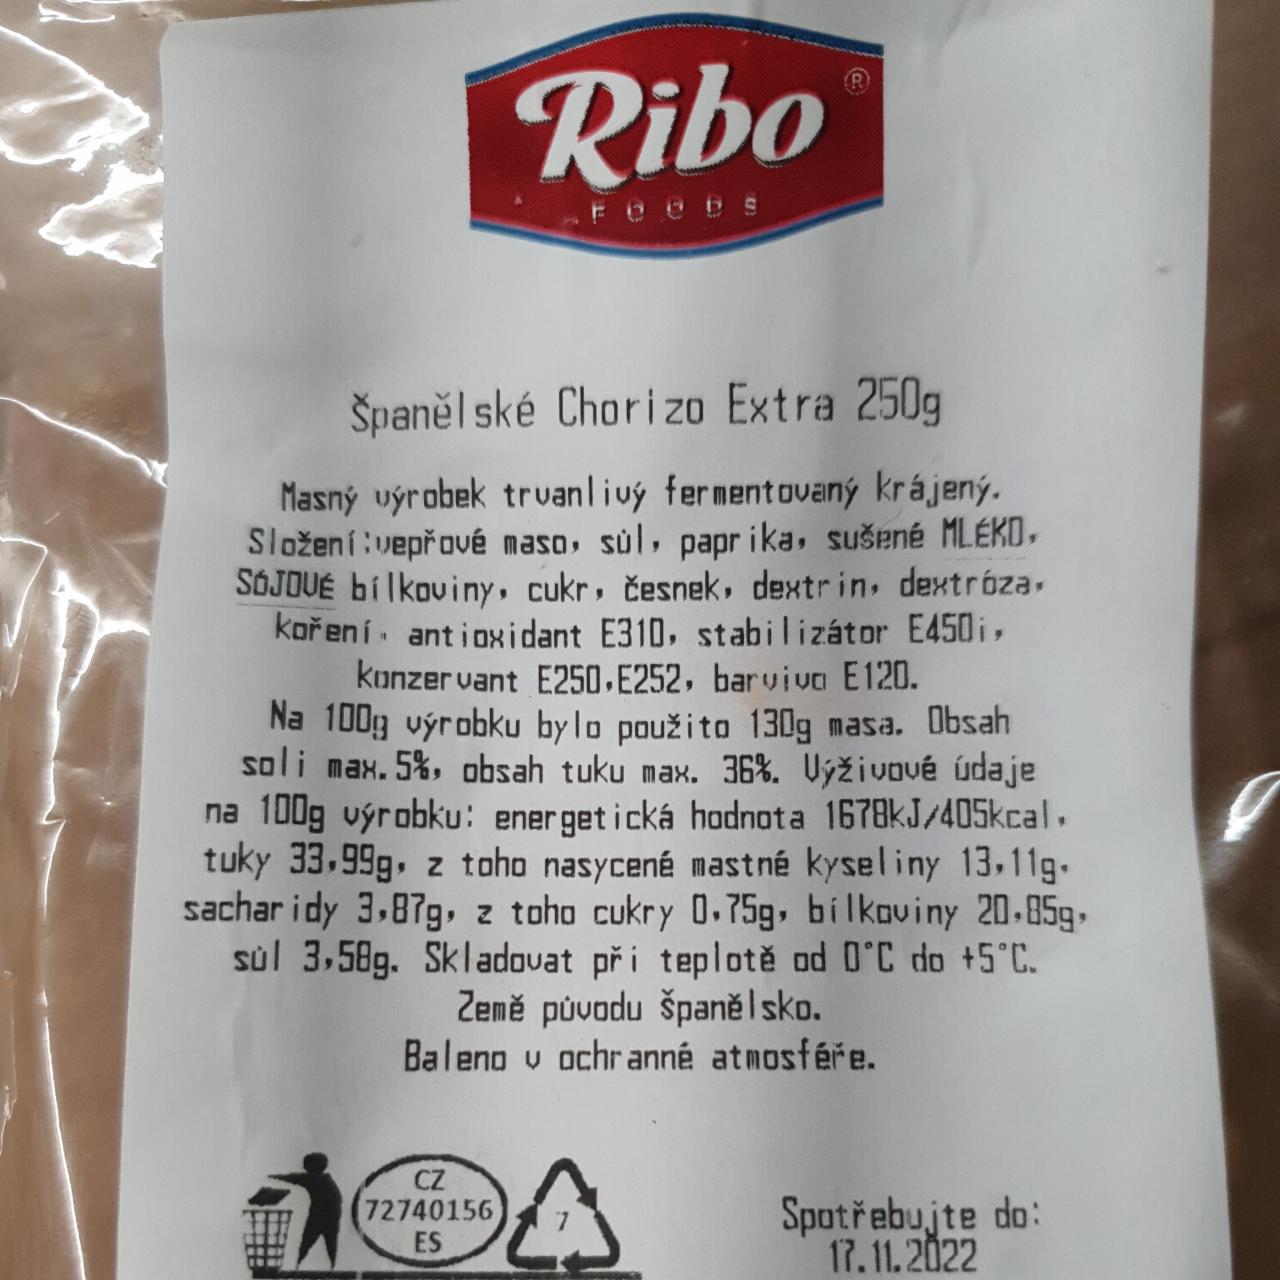 Fotografie - Španělské Chorizo Extra Ribo